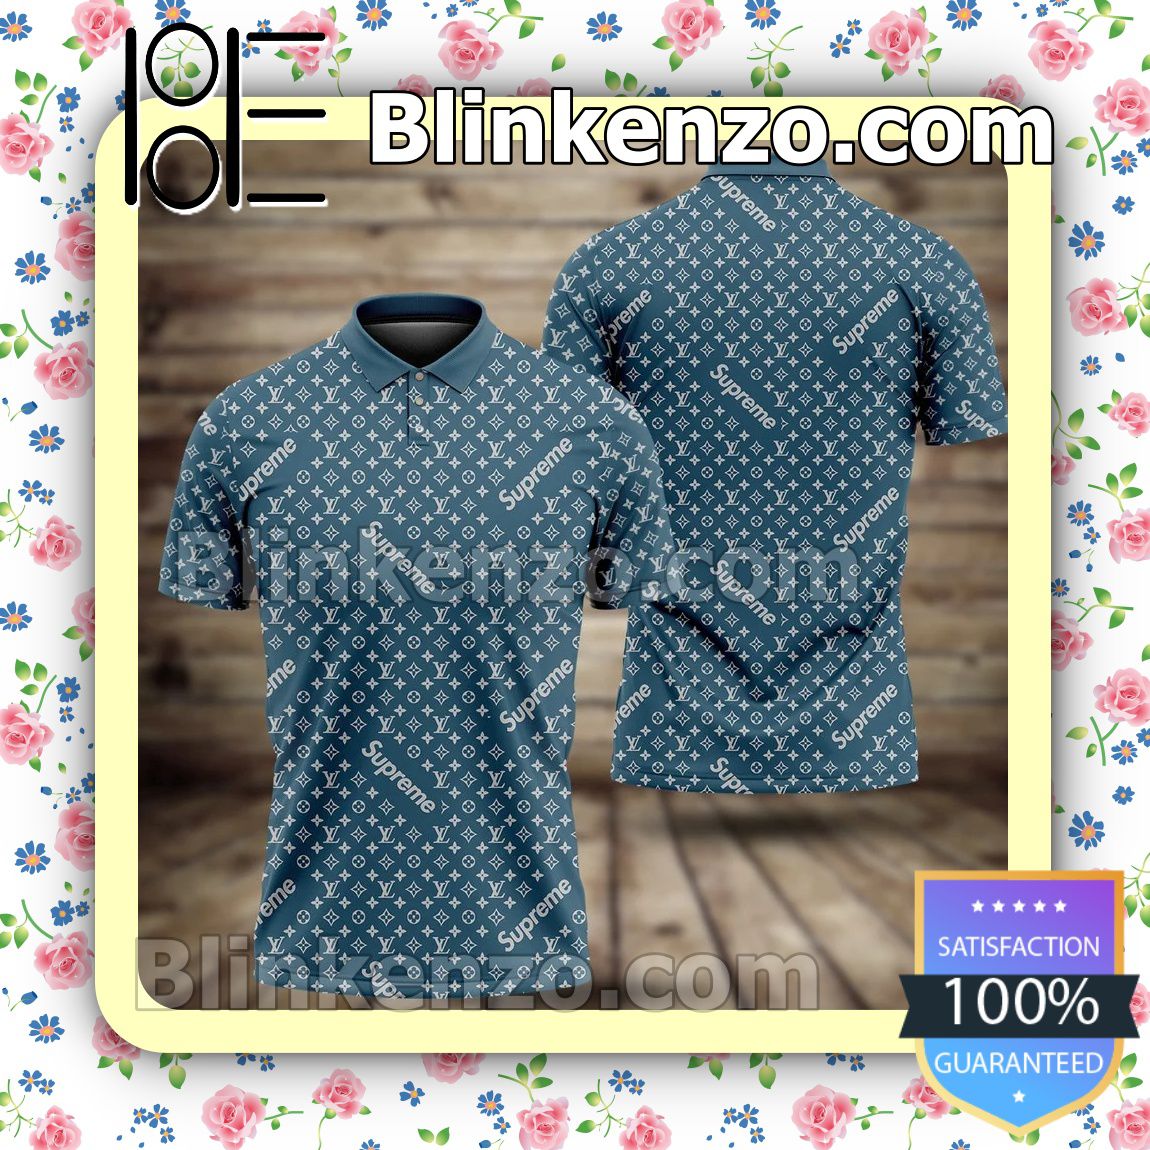 Louis Vuitton Monogram Supreme Blue Embroidered Polo Shirts - Blinkenzo